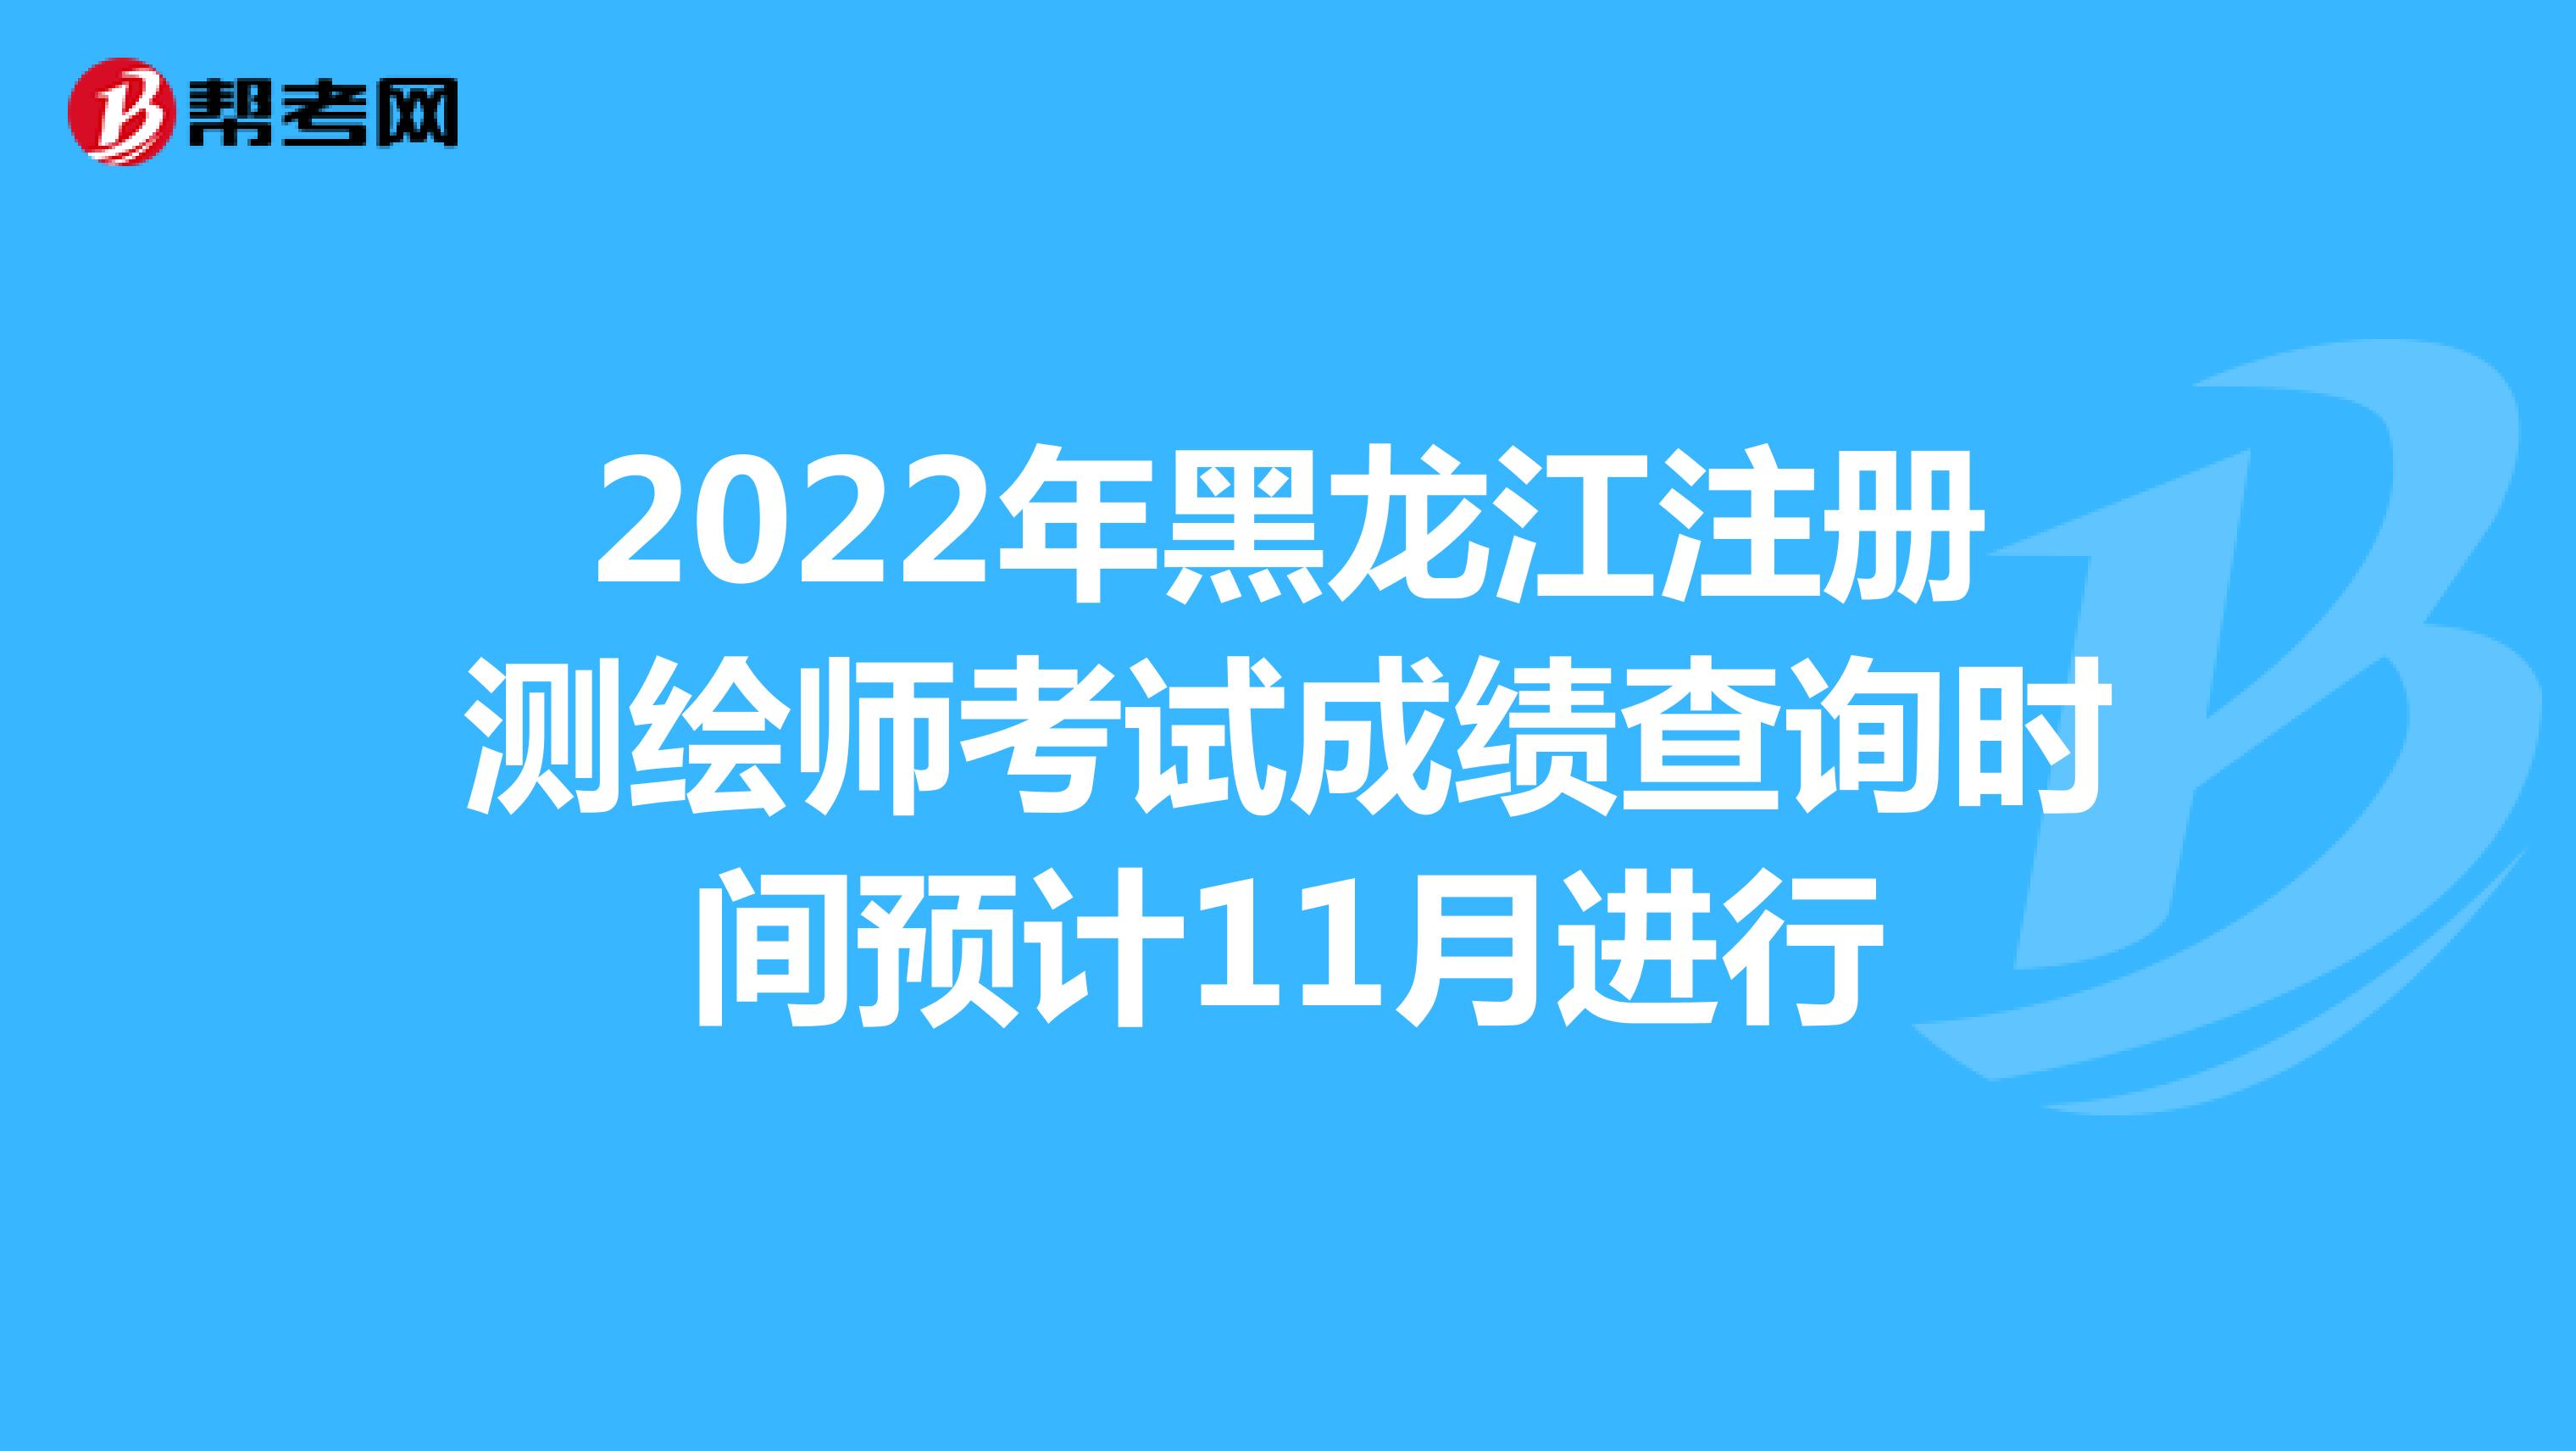 2022年黑龙江注册测绘师考试成绩查询时间预计11月进行